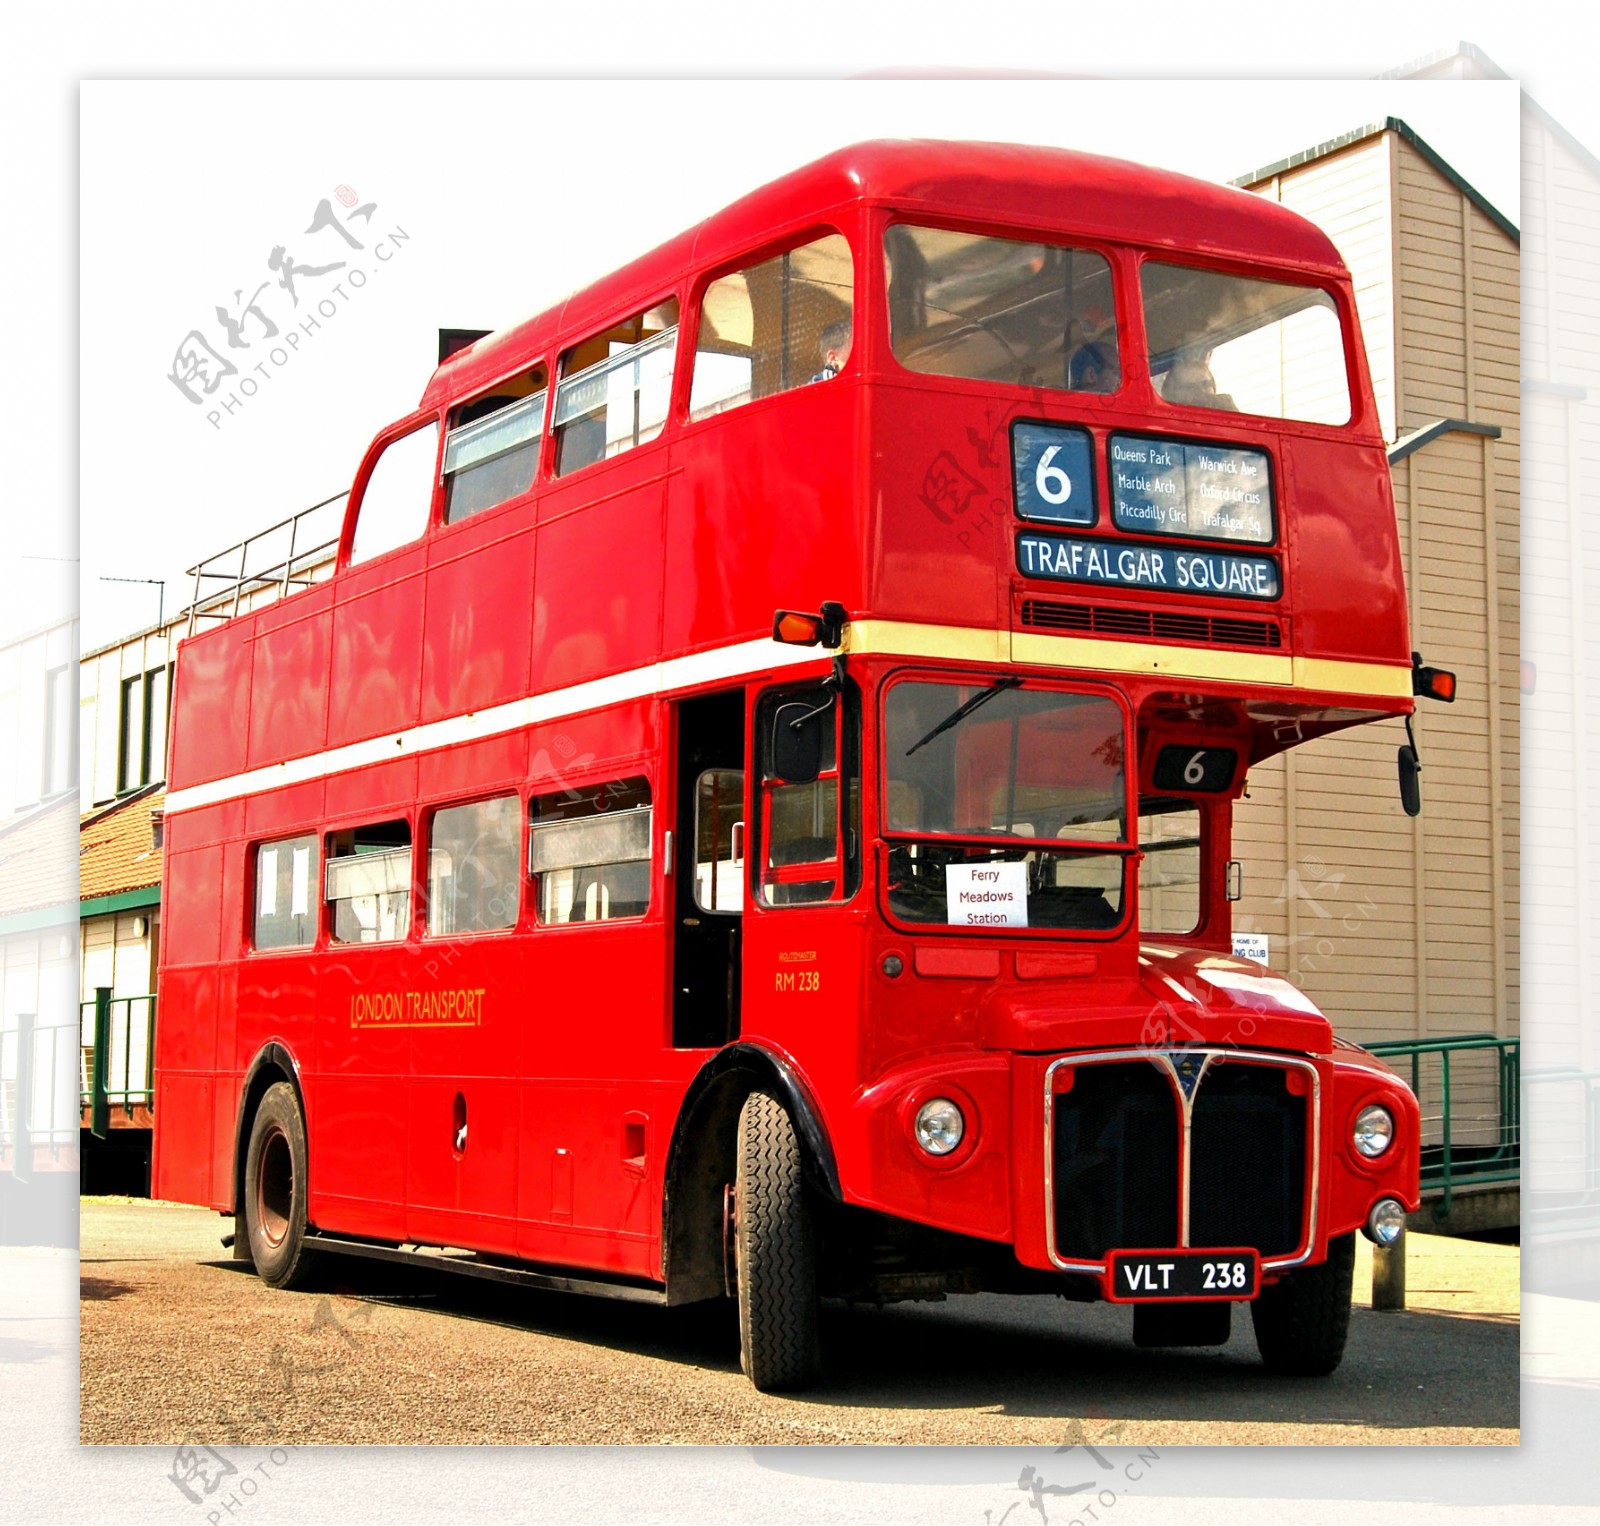 英国双层巴士图片